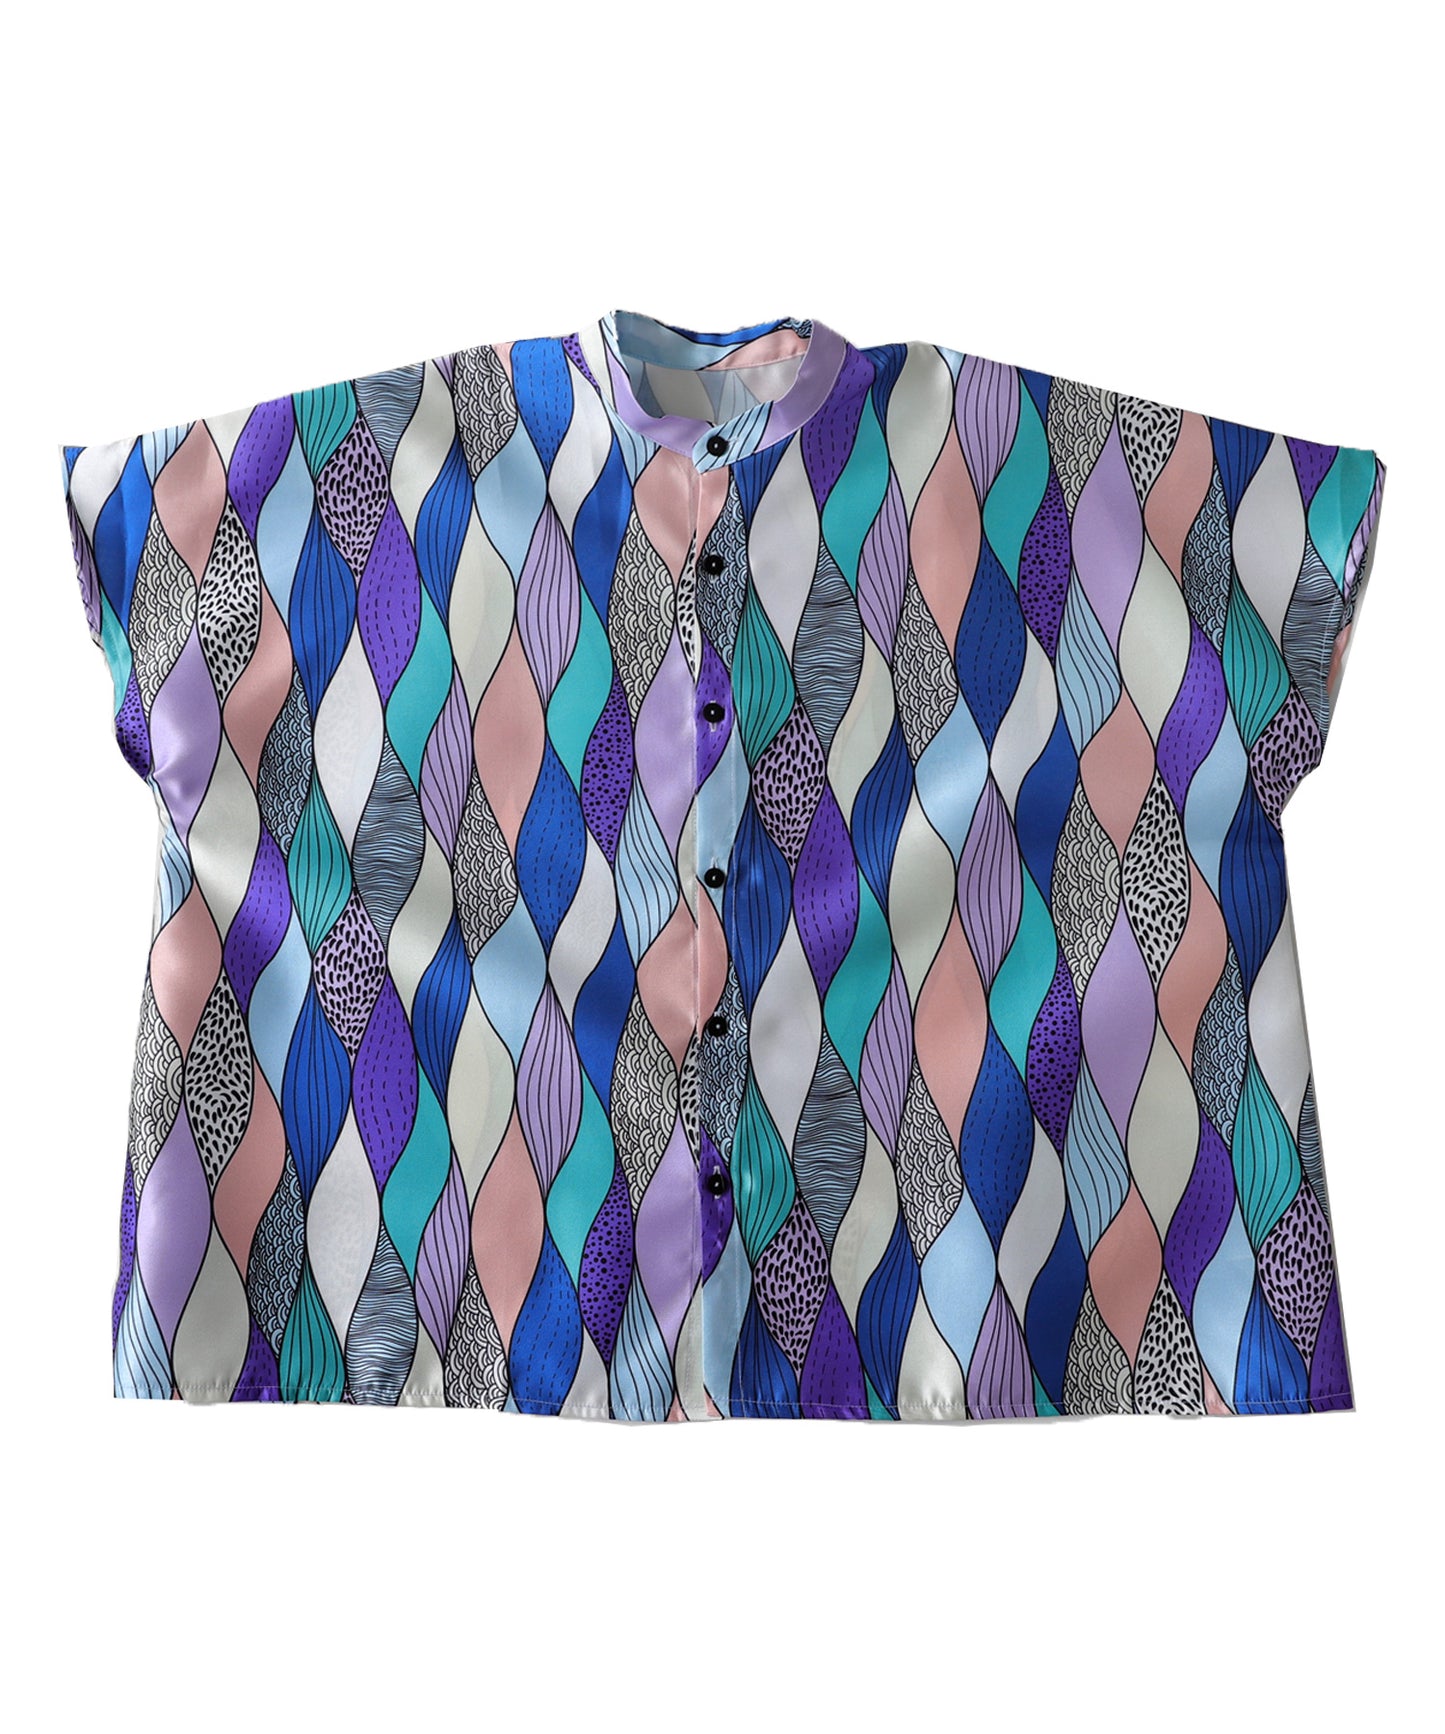 Art pattern Ladies Shirt Ladies Tops Short-Sleeve